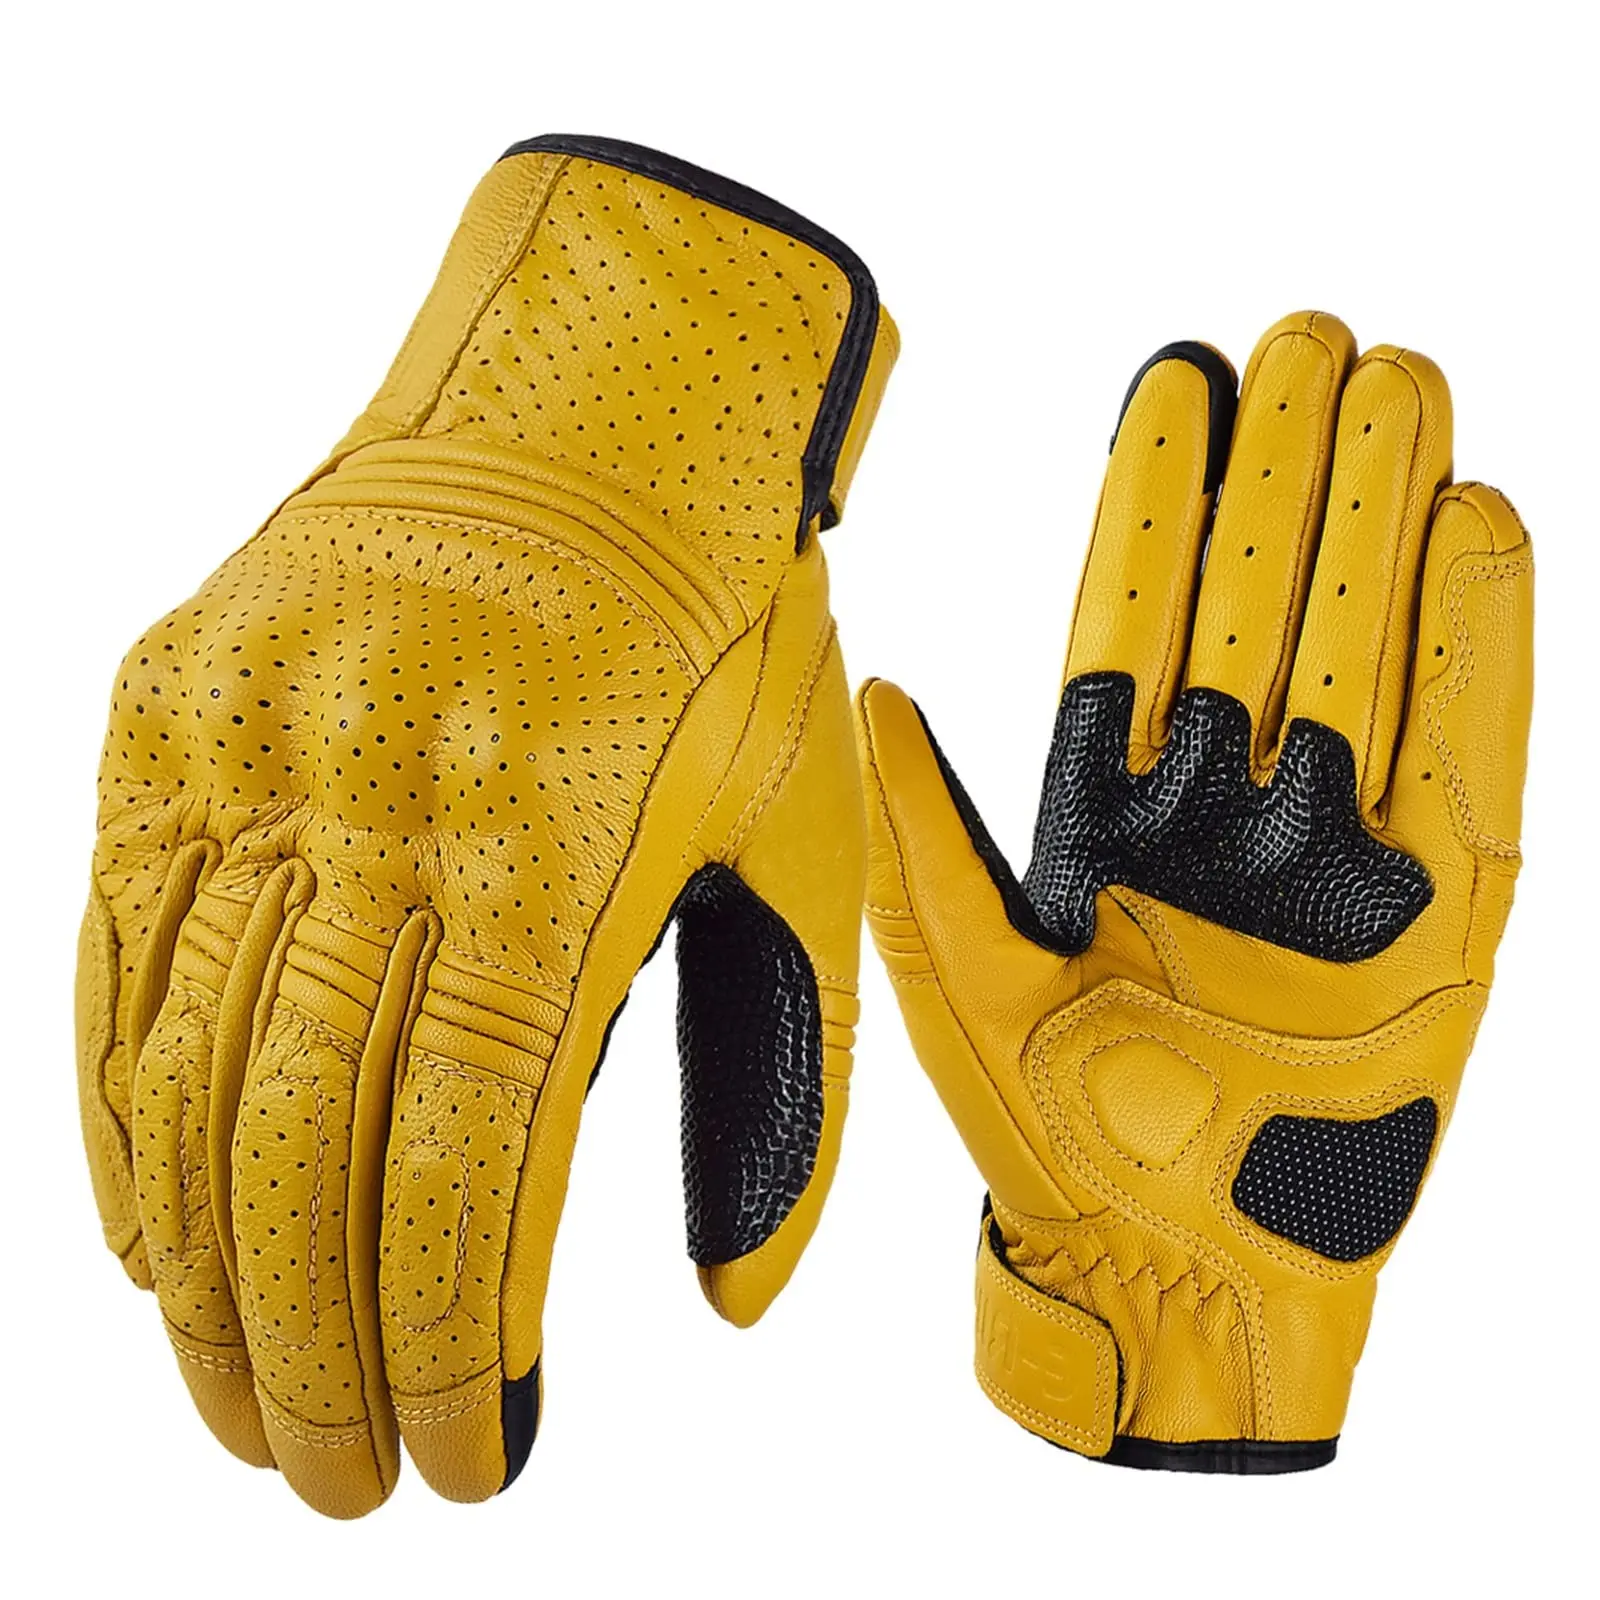 guantes moto amarillos - Cómo se llaman los guantes amarillos